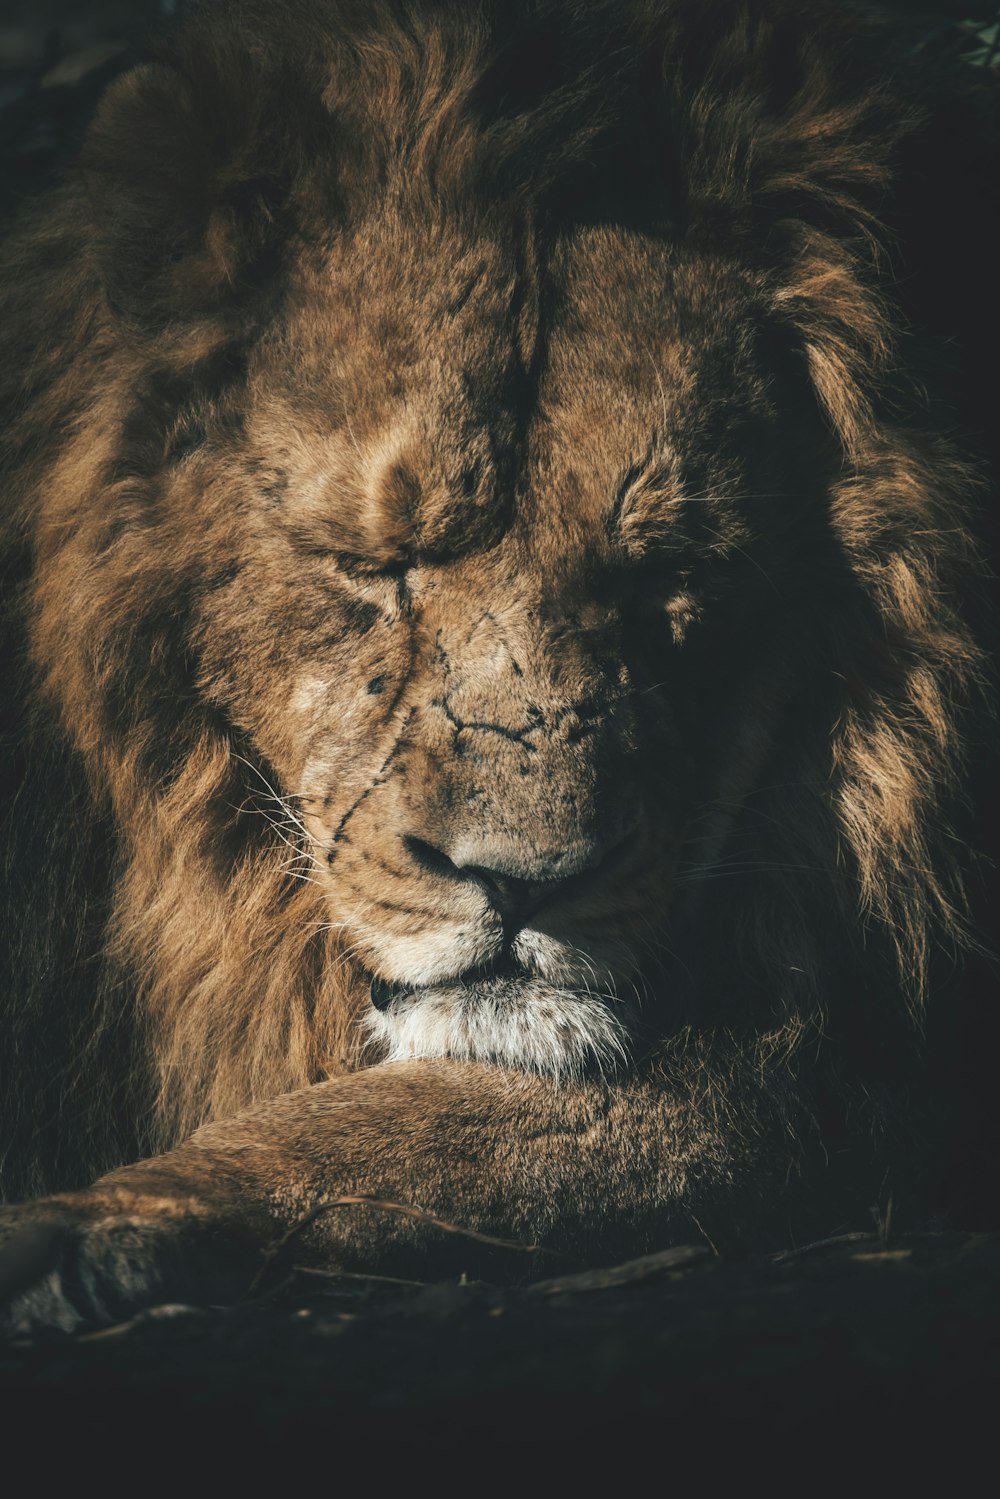 Un león mirando a la cámara